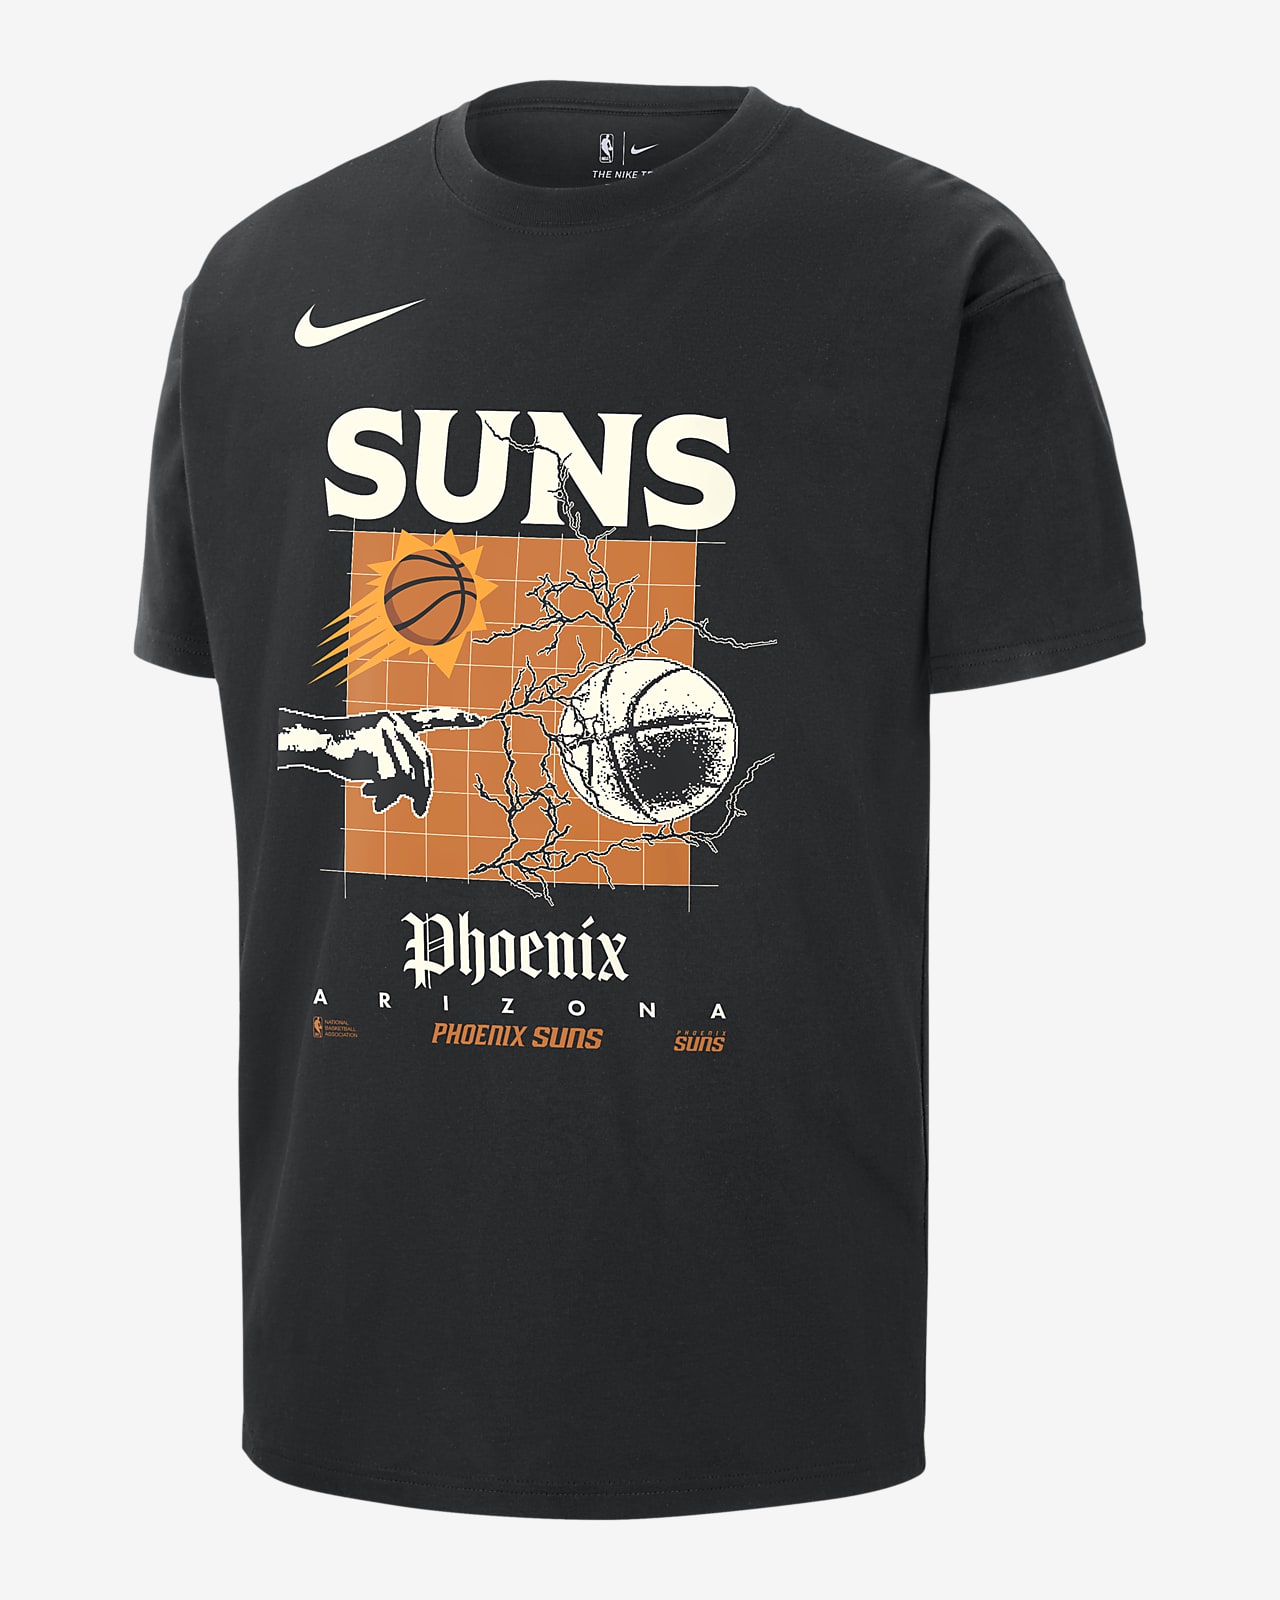 Ανδρικό T-Shirt Nike NBA Max90 Φοίνιξ Σανς Courtside